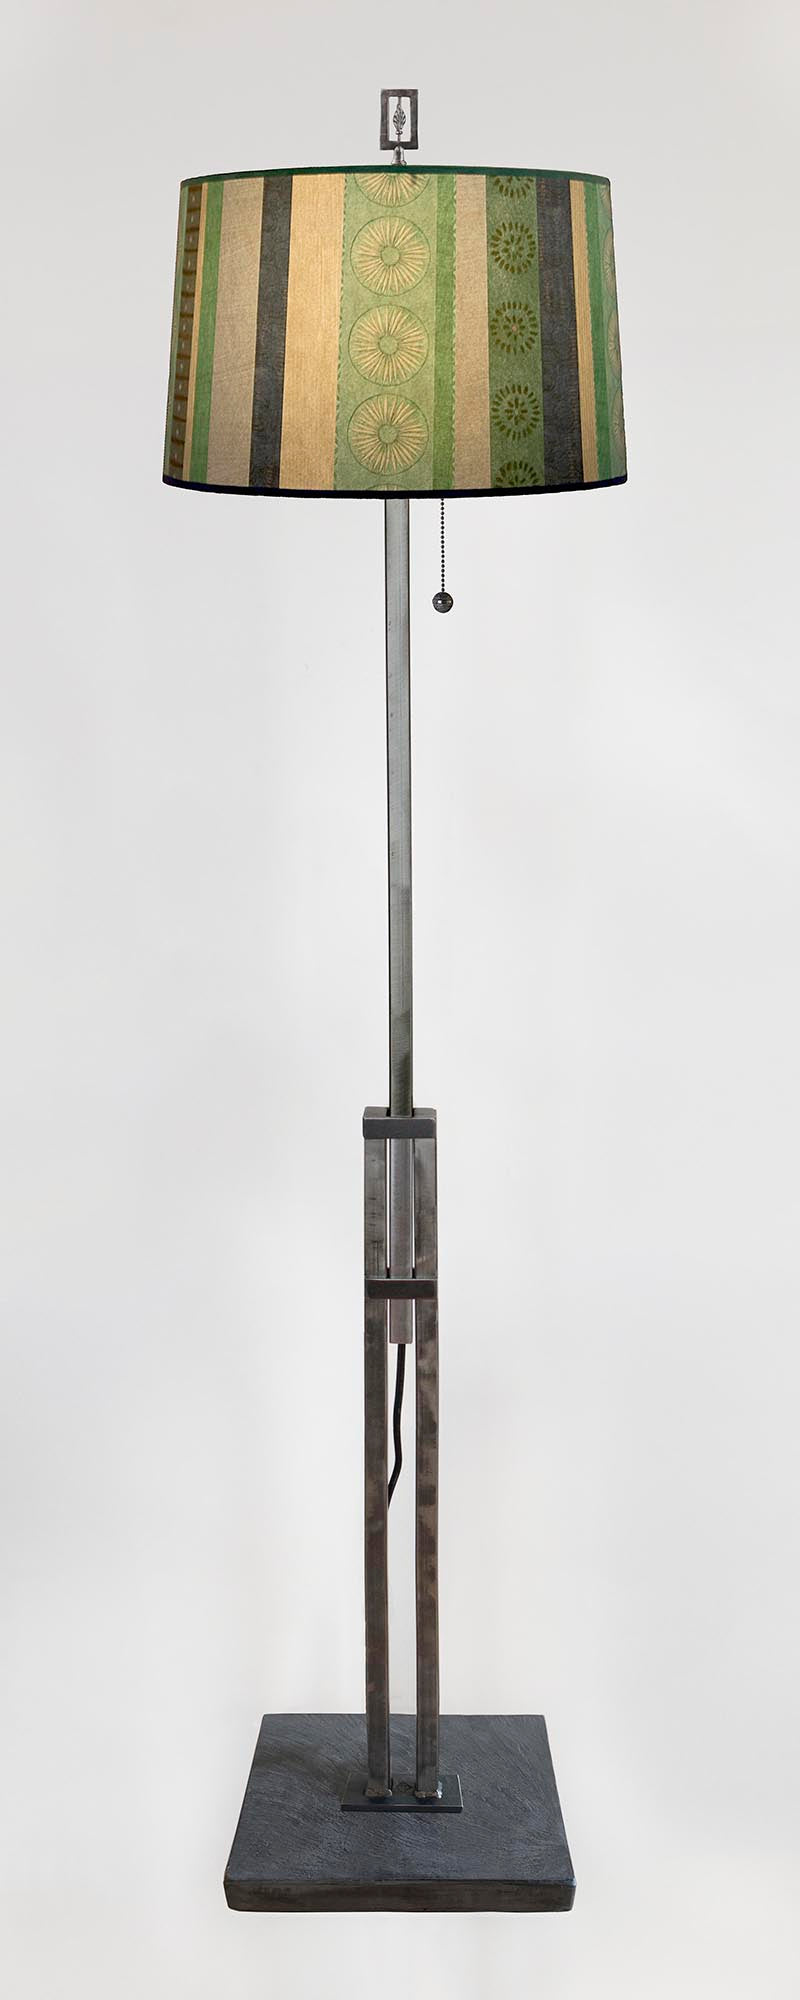 Adjustable-Height Steel Floor Lamp with Large Drum Shade in Serape Waters